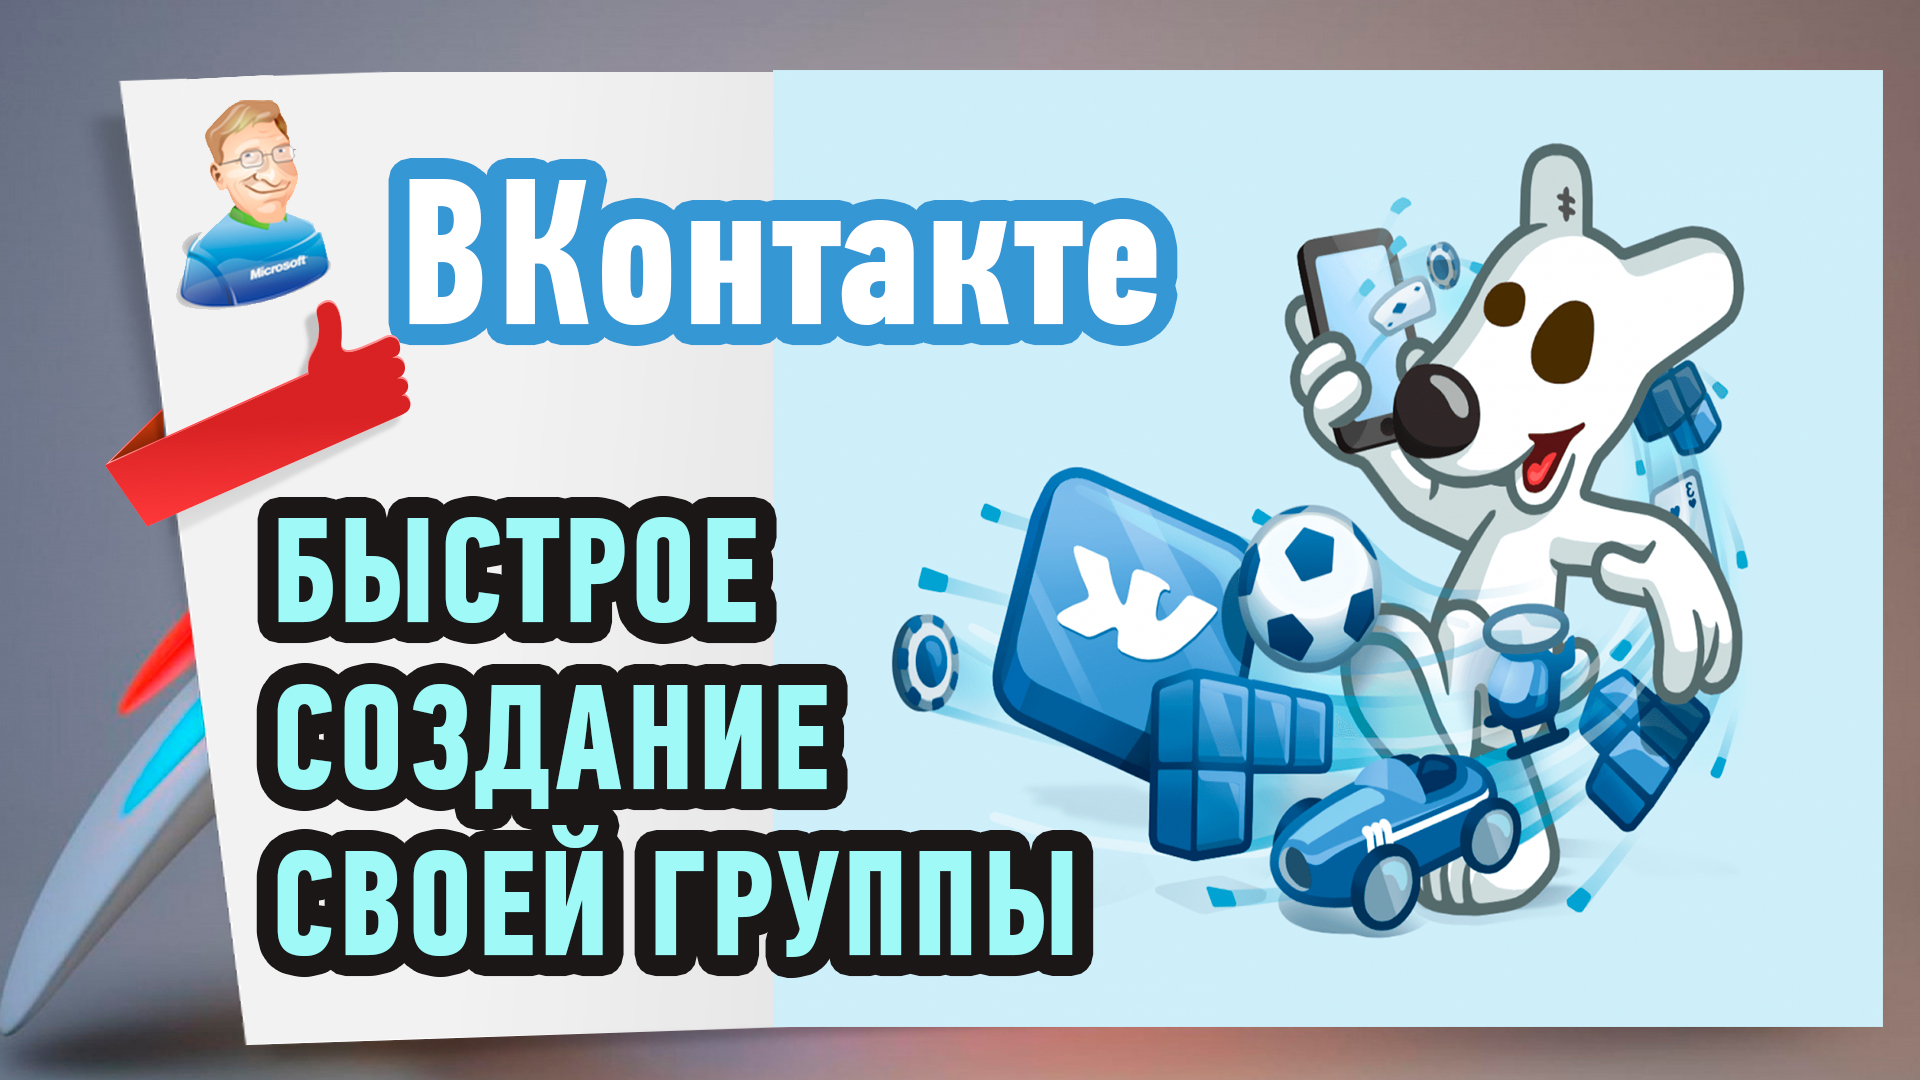 Как создать группу ВКонтакте?